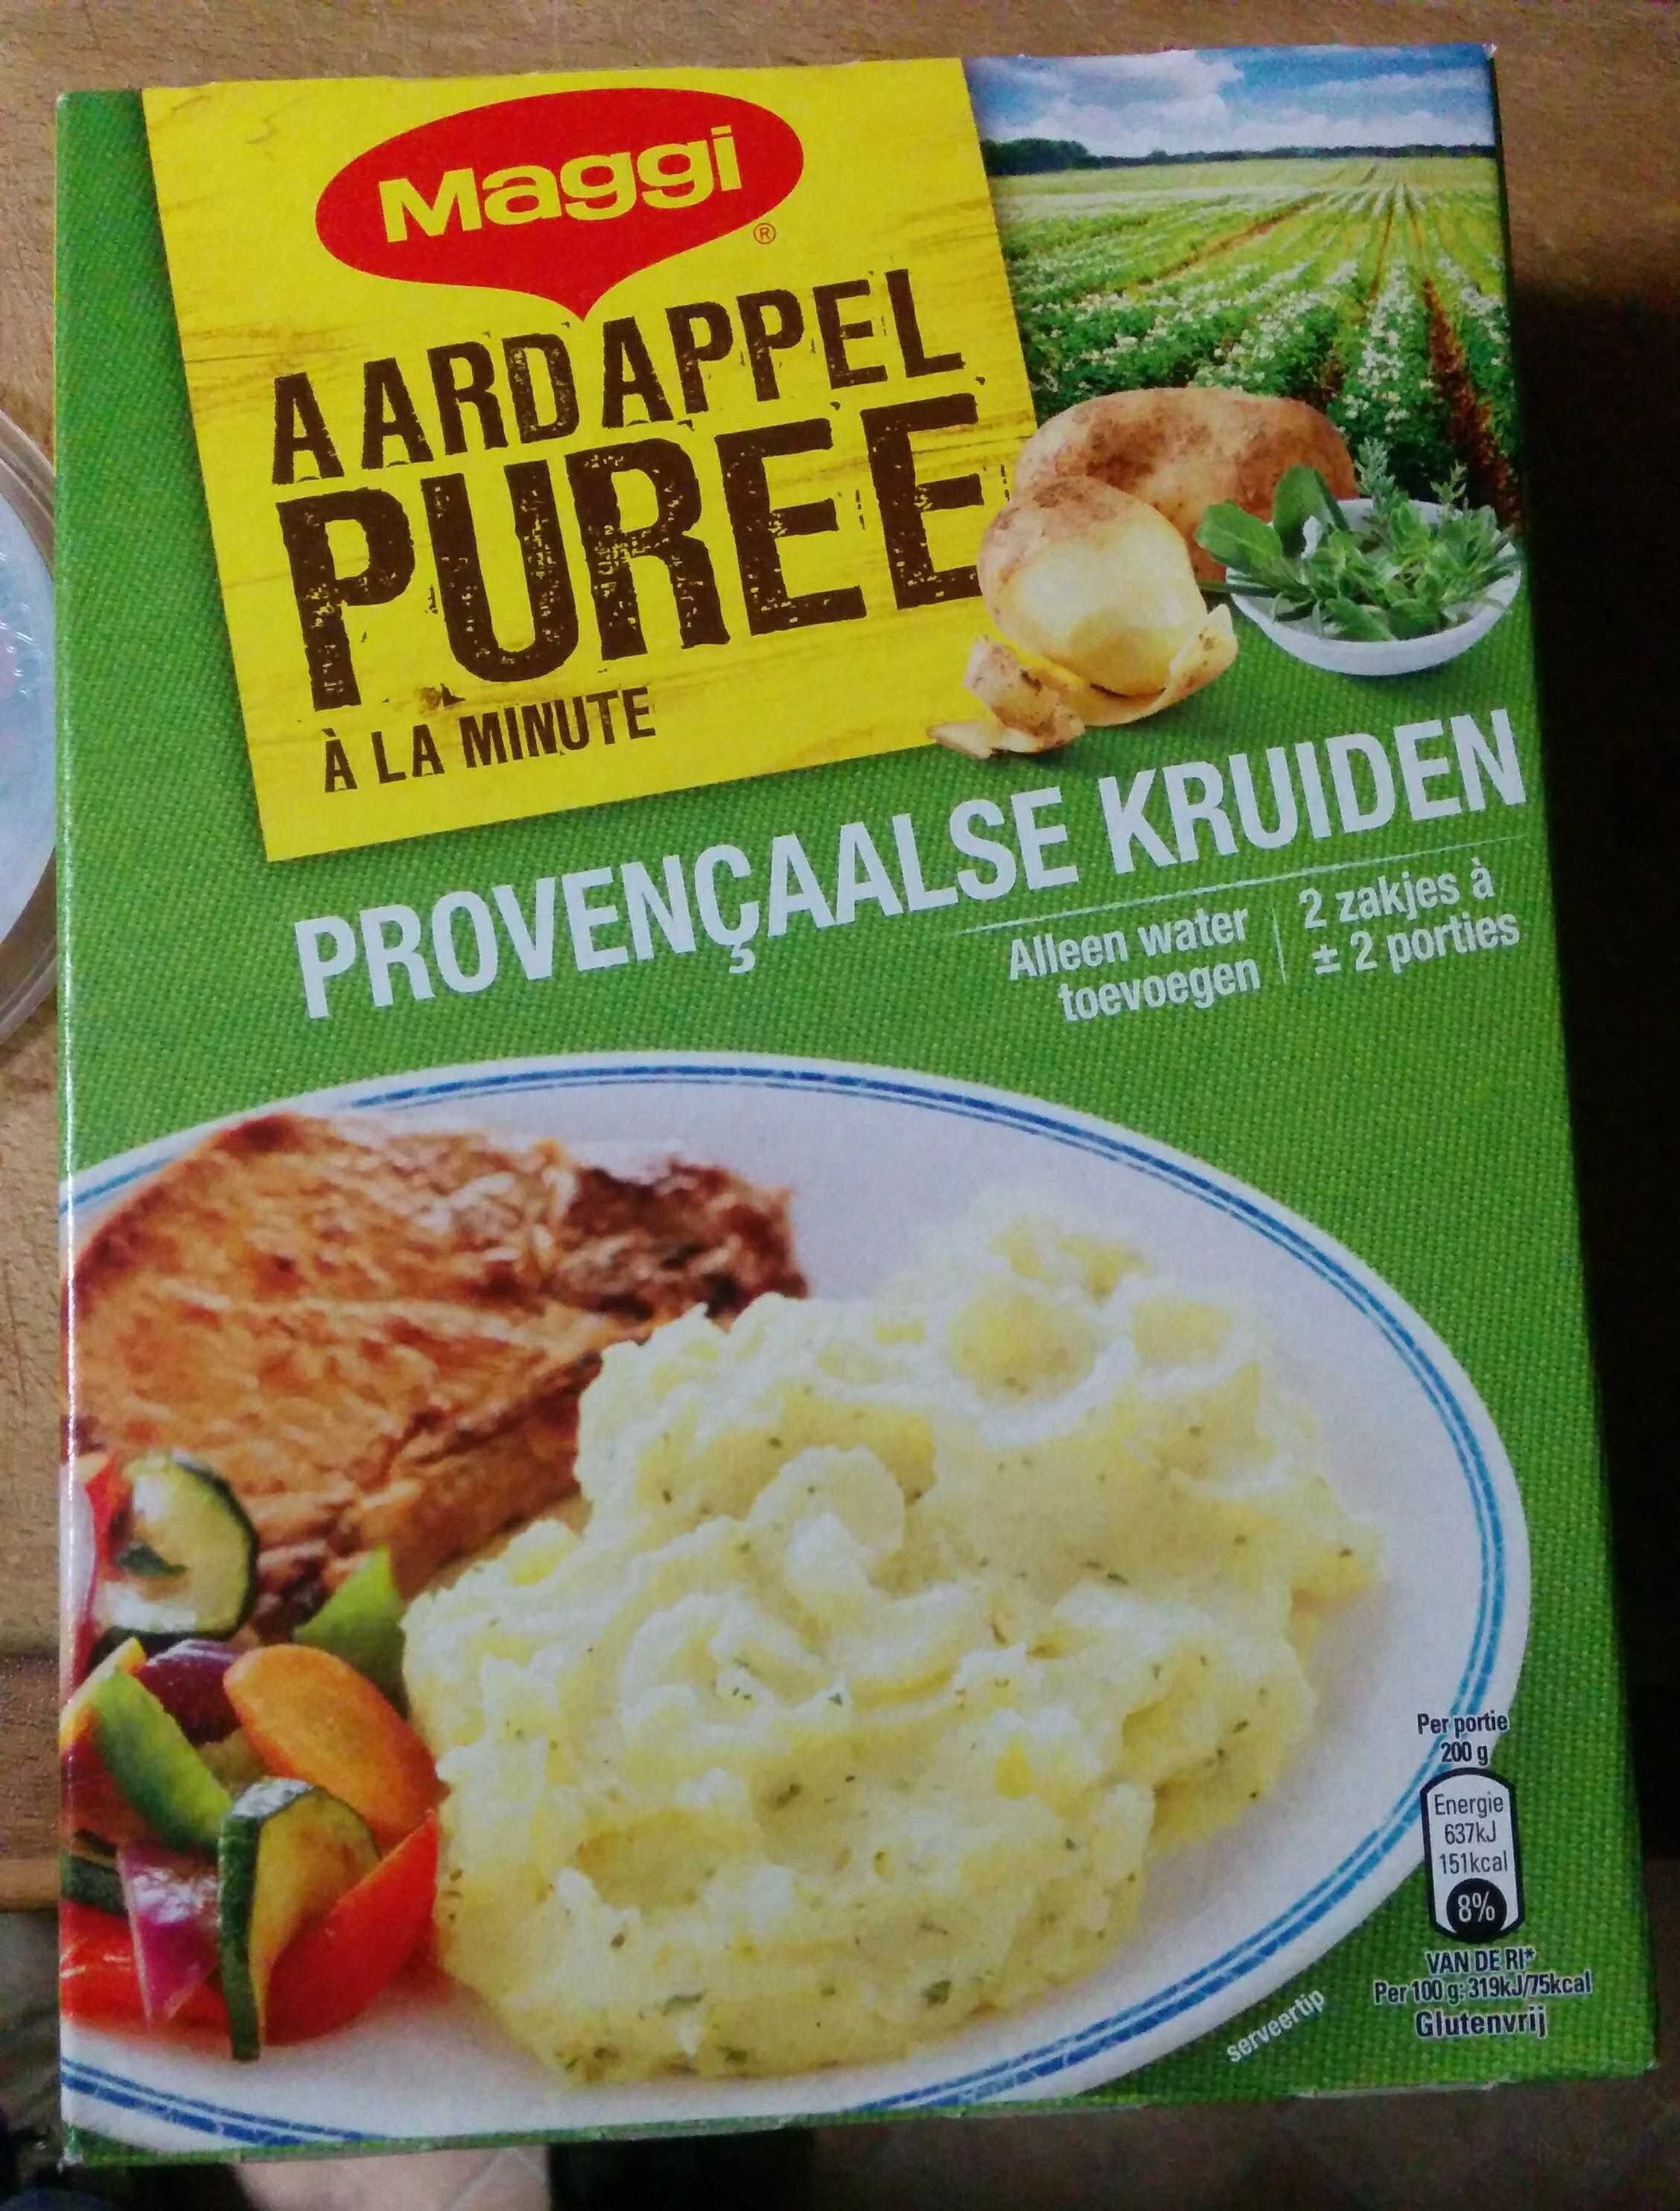 Aardappelpuree Provencaalse kruiden (400g) - Product - en